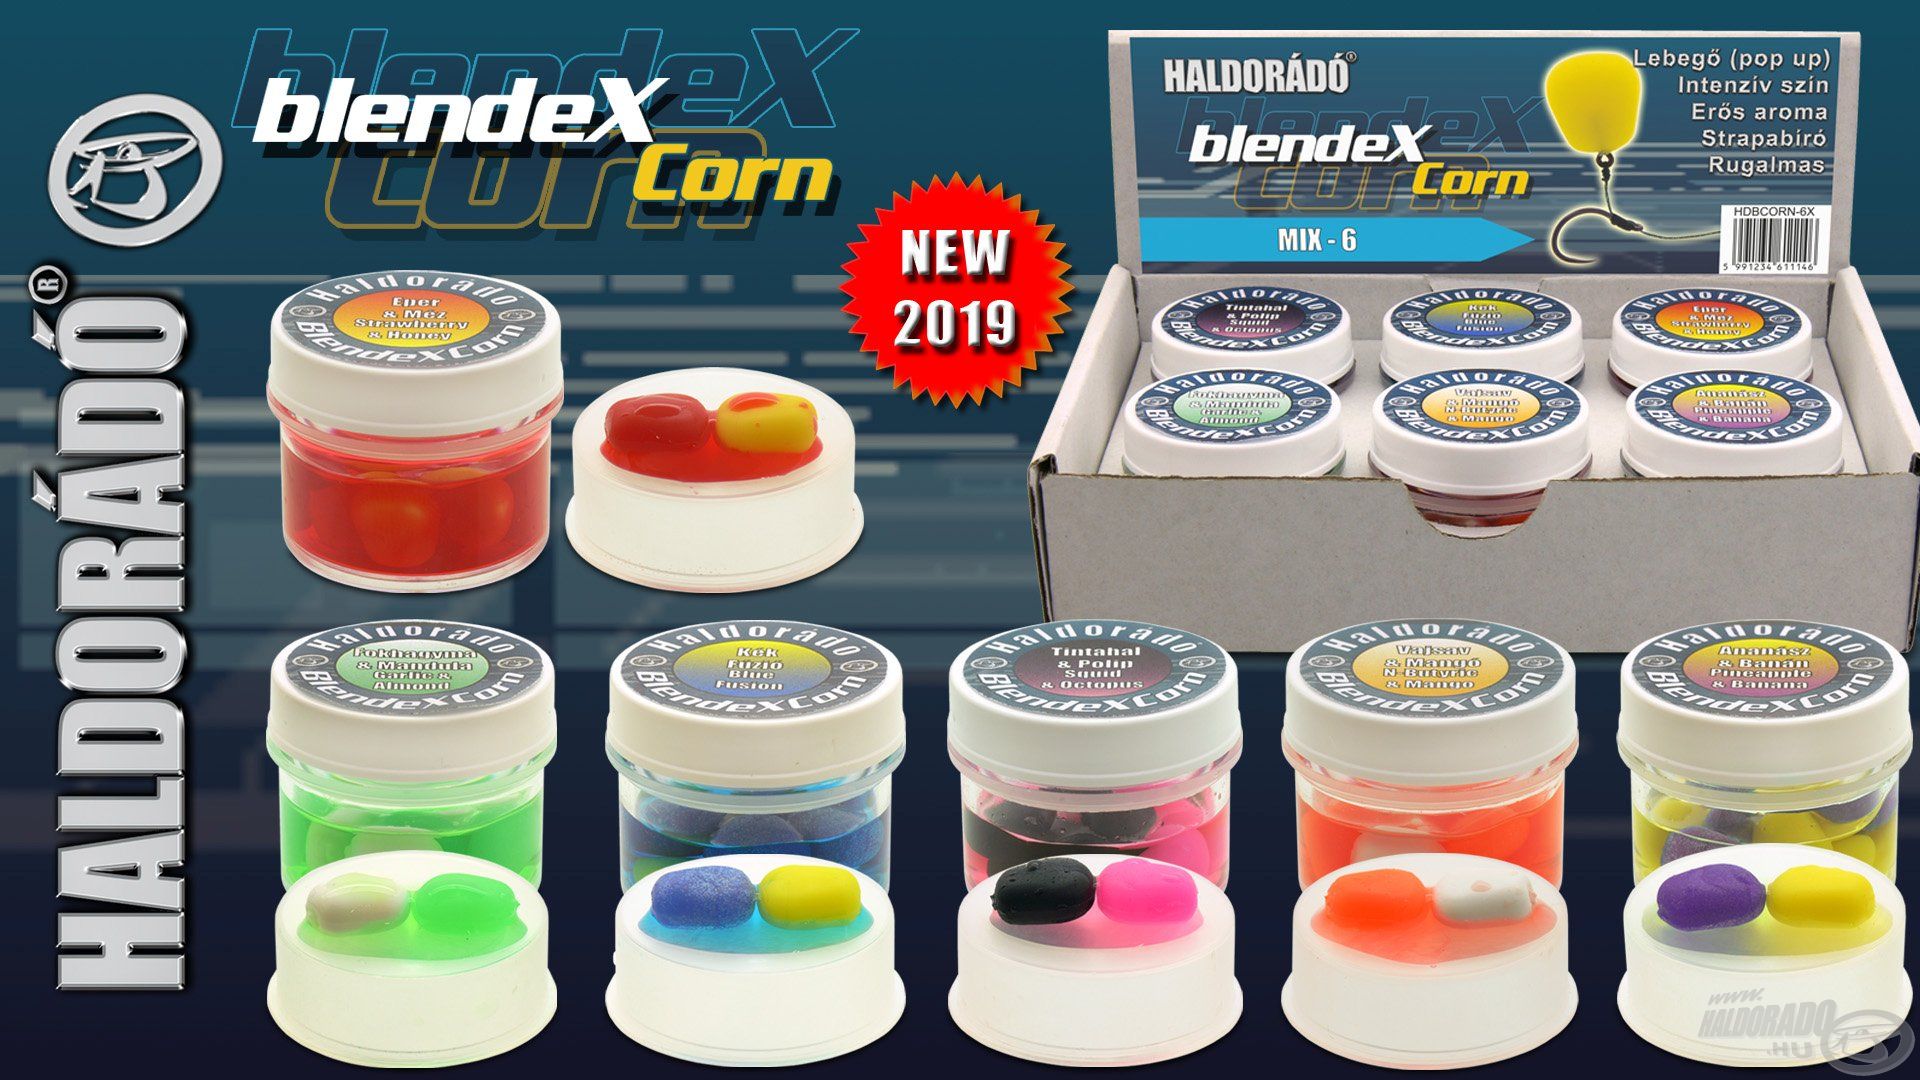 Íme, a BlendeX csalik feltűnő színeivel és intenzív aromáival készült új gumikukorica család, a BlendeXCorn!